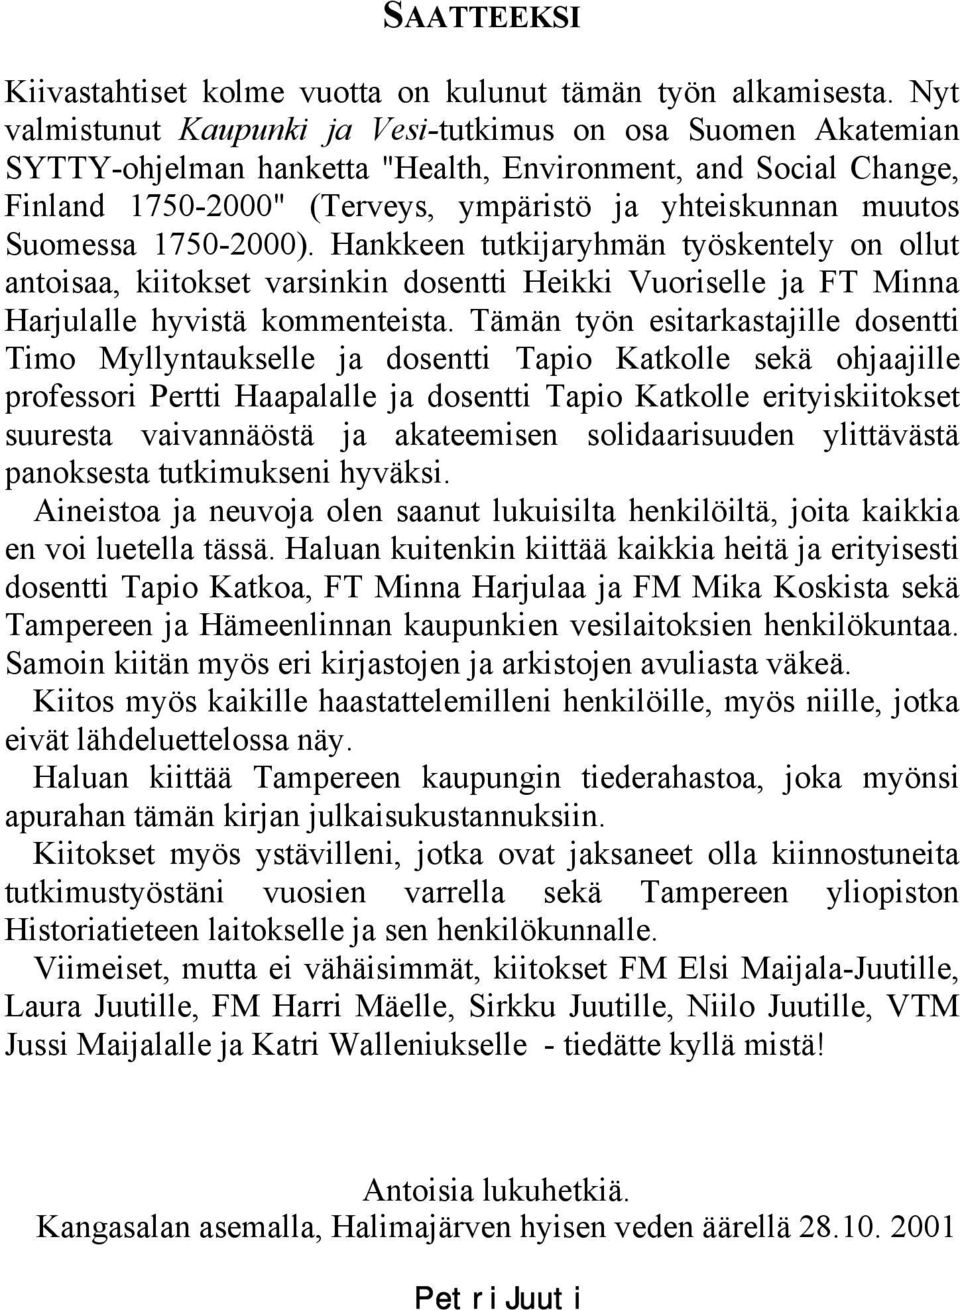 Suomessa 1750-2000). Hankkeen tutkijaryhmän työskentely on ollut antoisaa, kiitokset varsinkin dosentti Heikki Vuoriselle ja FT Minna Harjulalle hyvistä kommenteista.